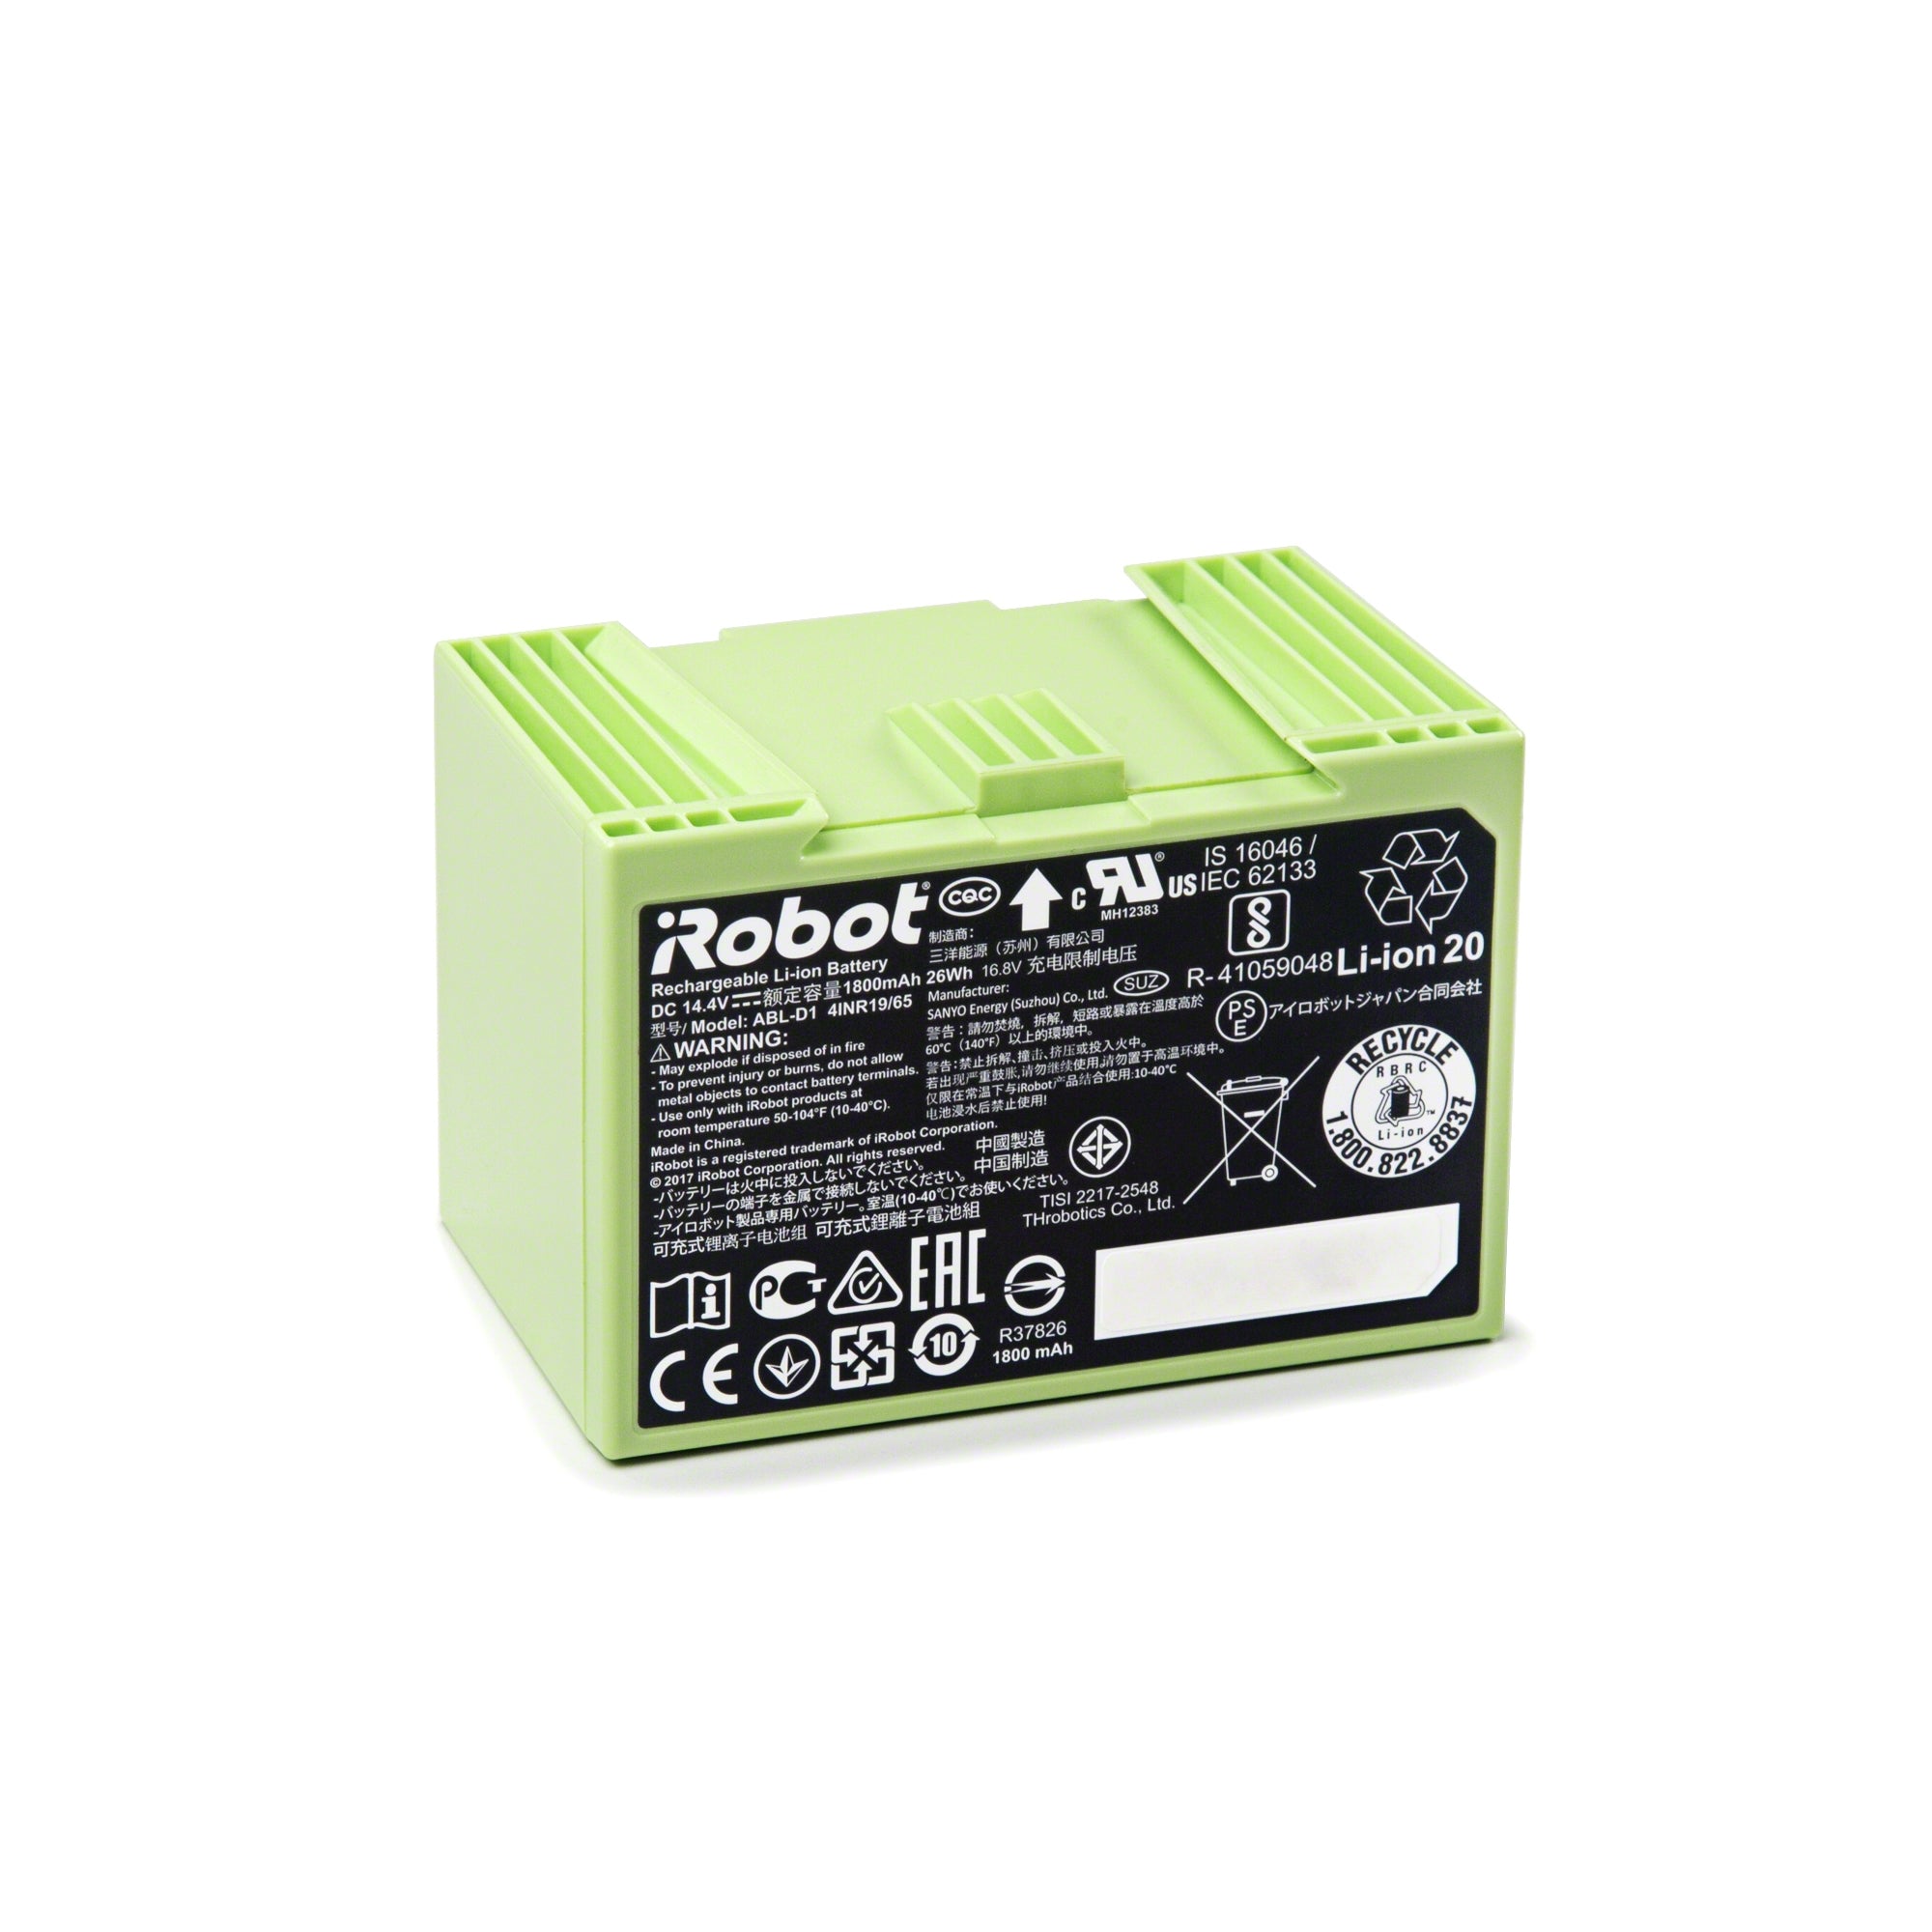 Se Roomba® e- og i-serie erstatnings batteri hos iRobot.dk